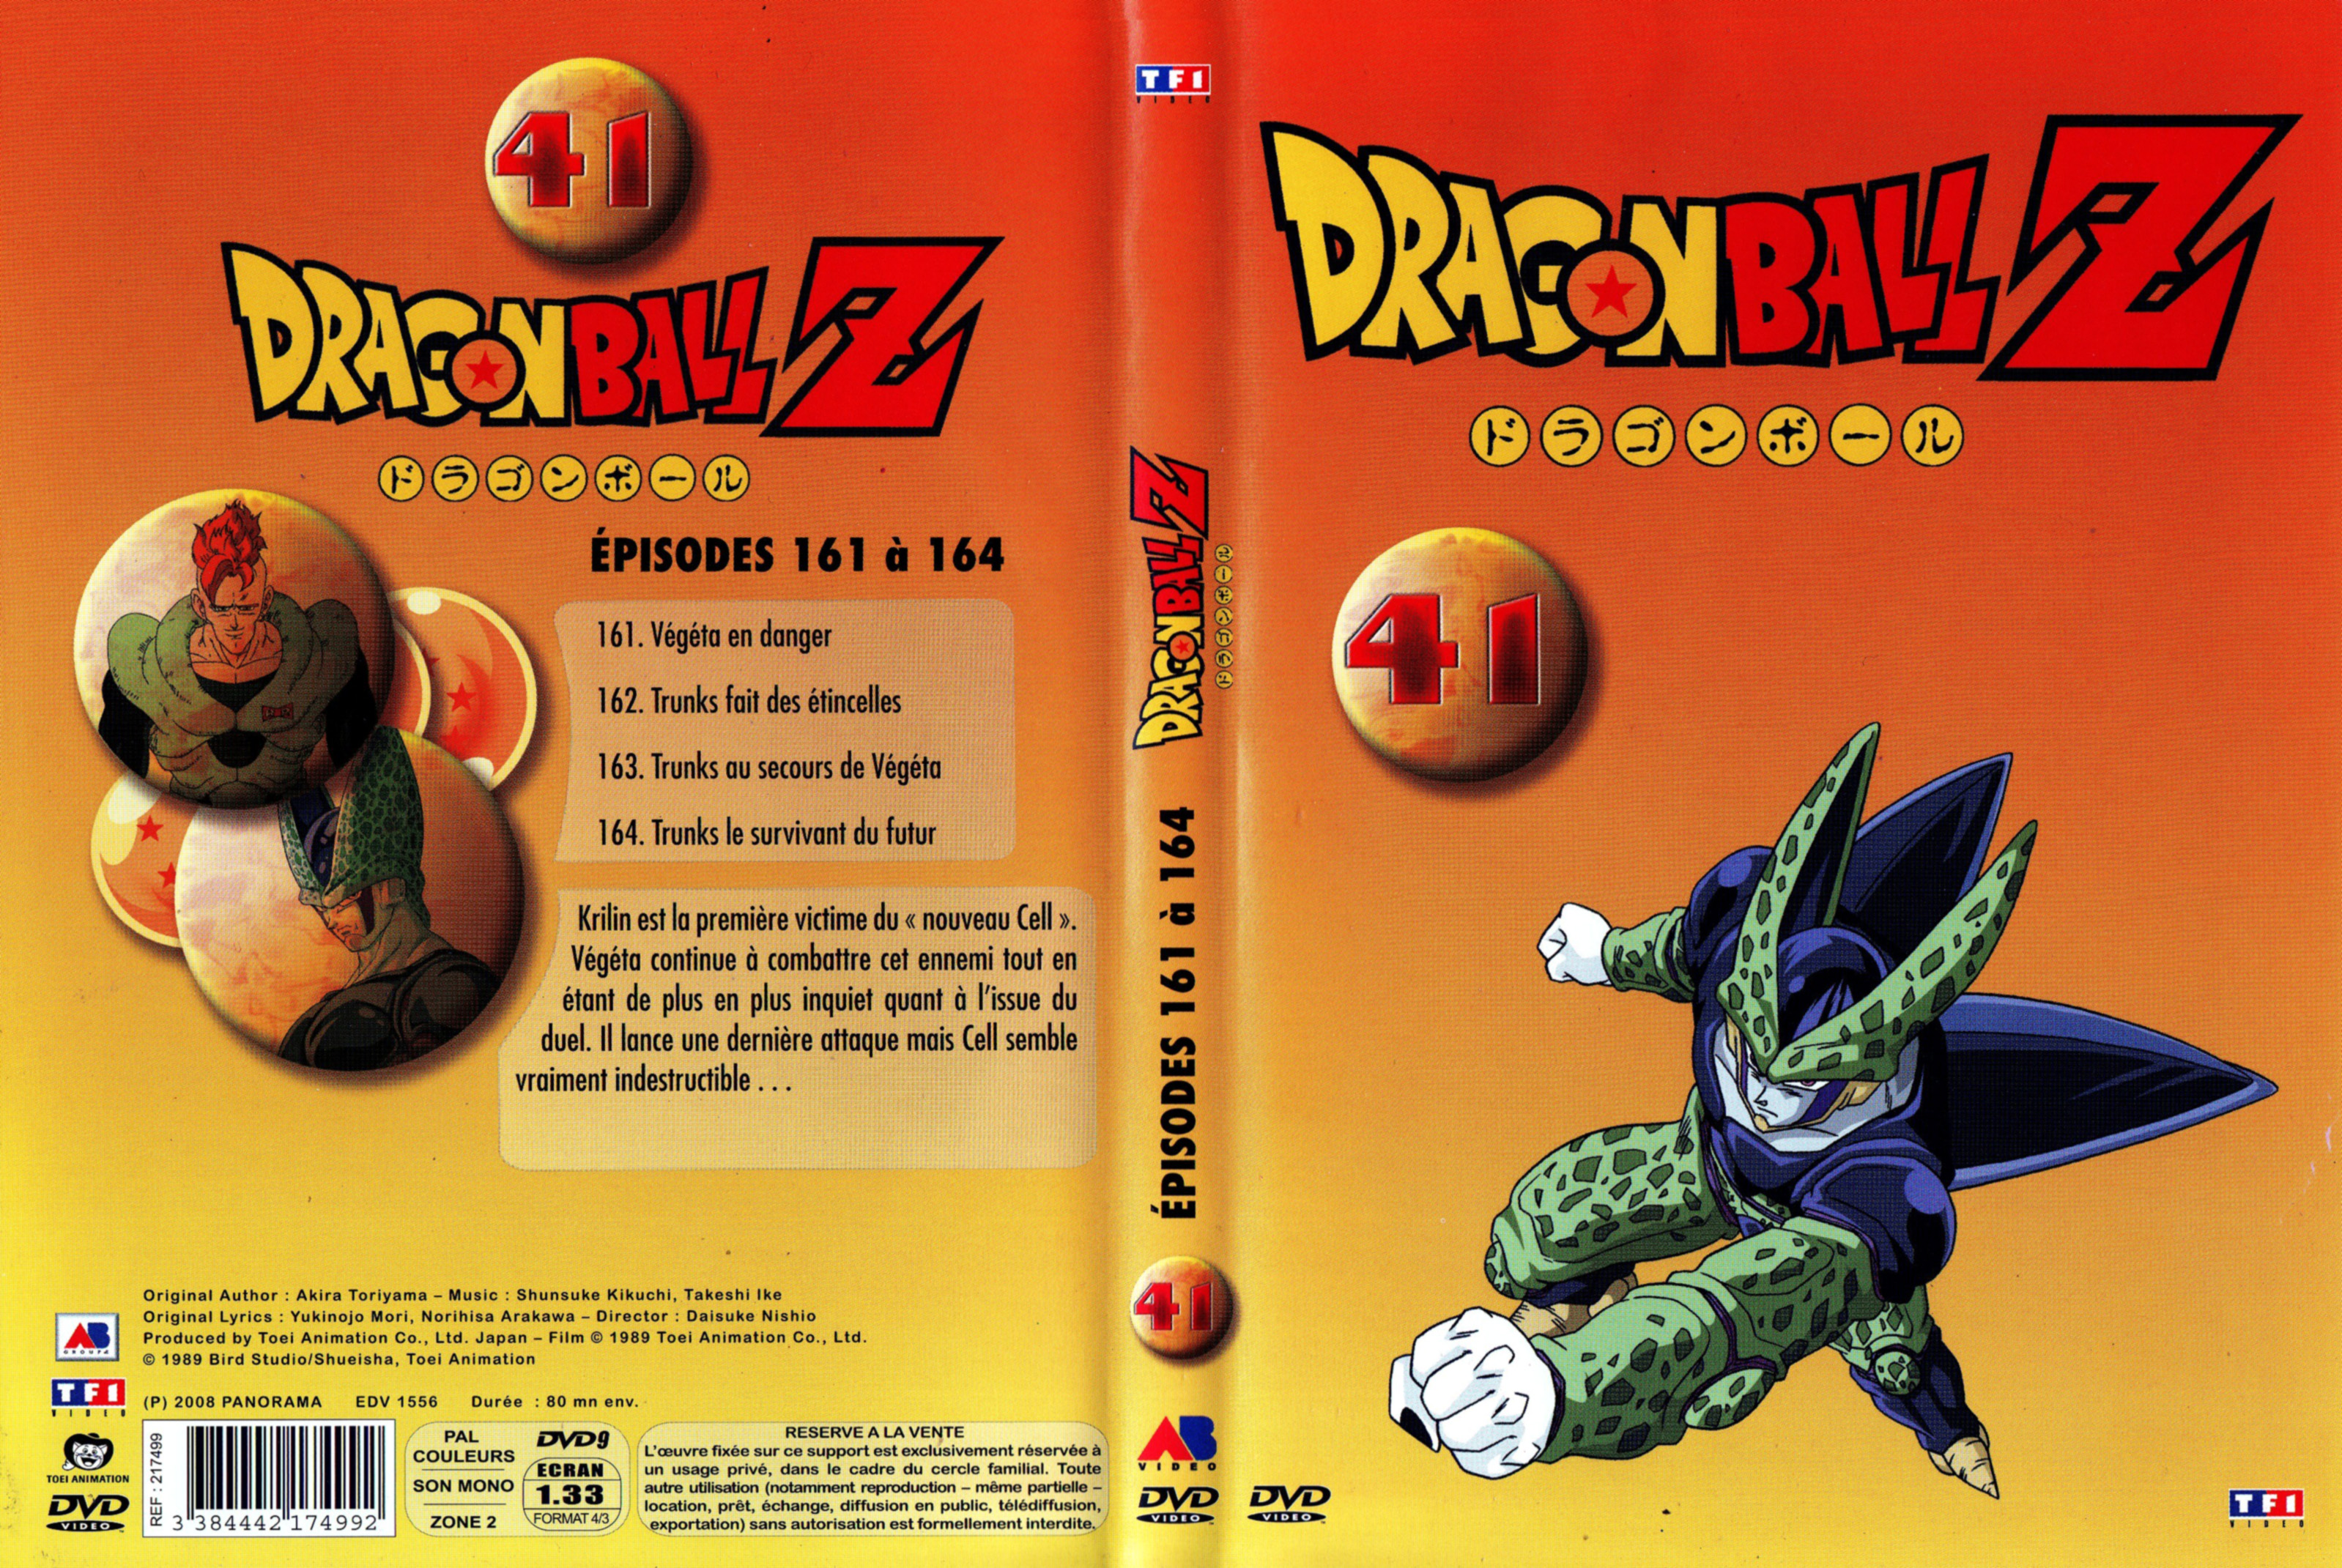 Jaquette DVD Dragon Ball Z vol 41 v2